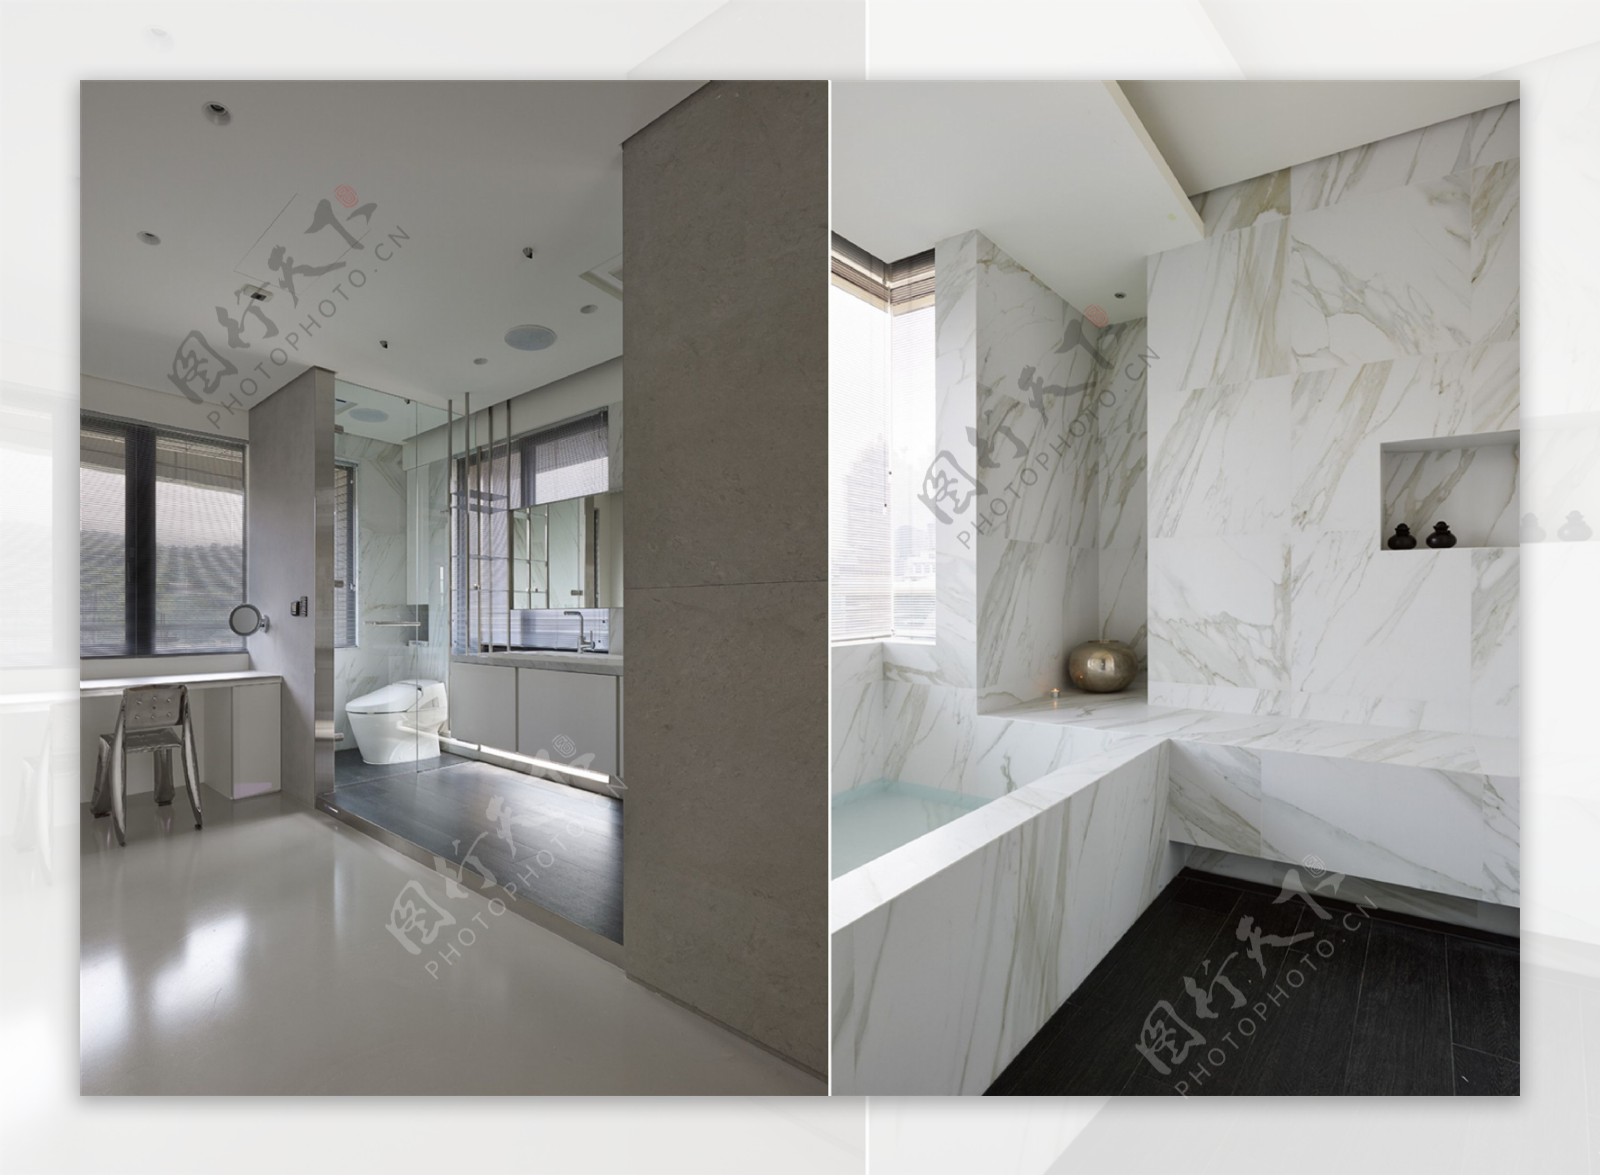 现代家居浴室装修效果图